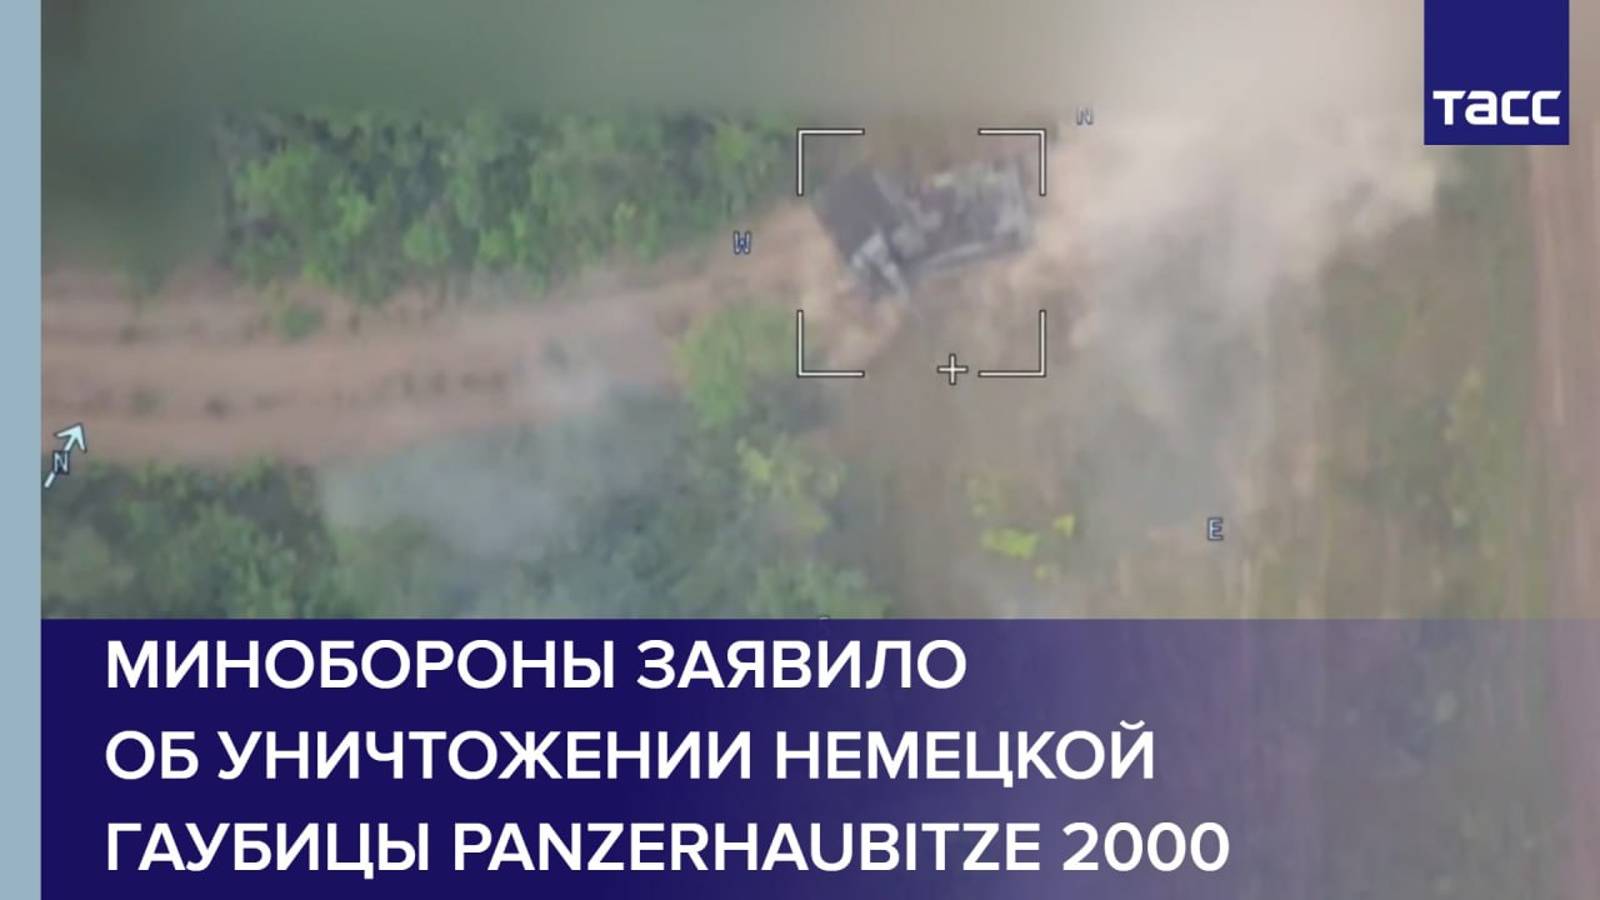 Минобороны заявило об уничтожении немецкой гаубицы Panzerhaubitze 2000